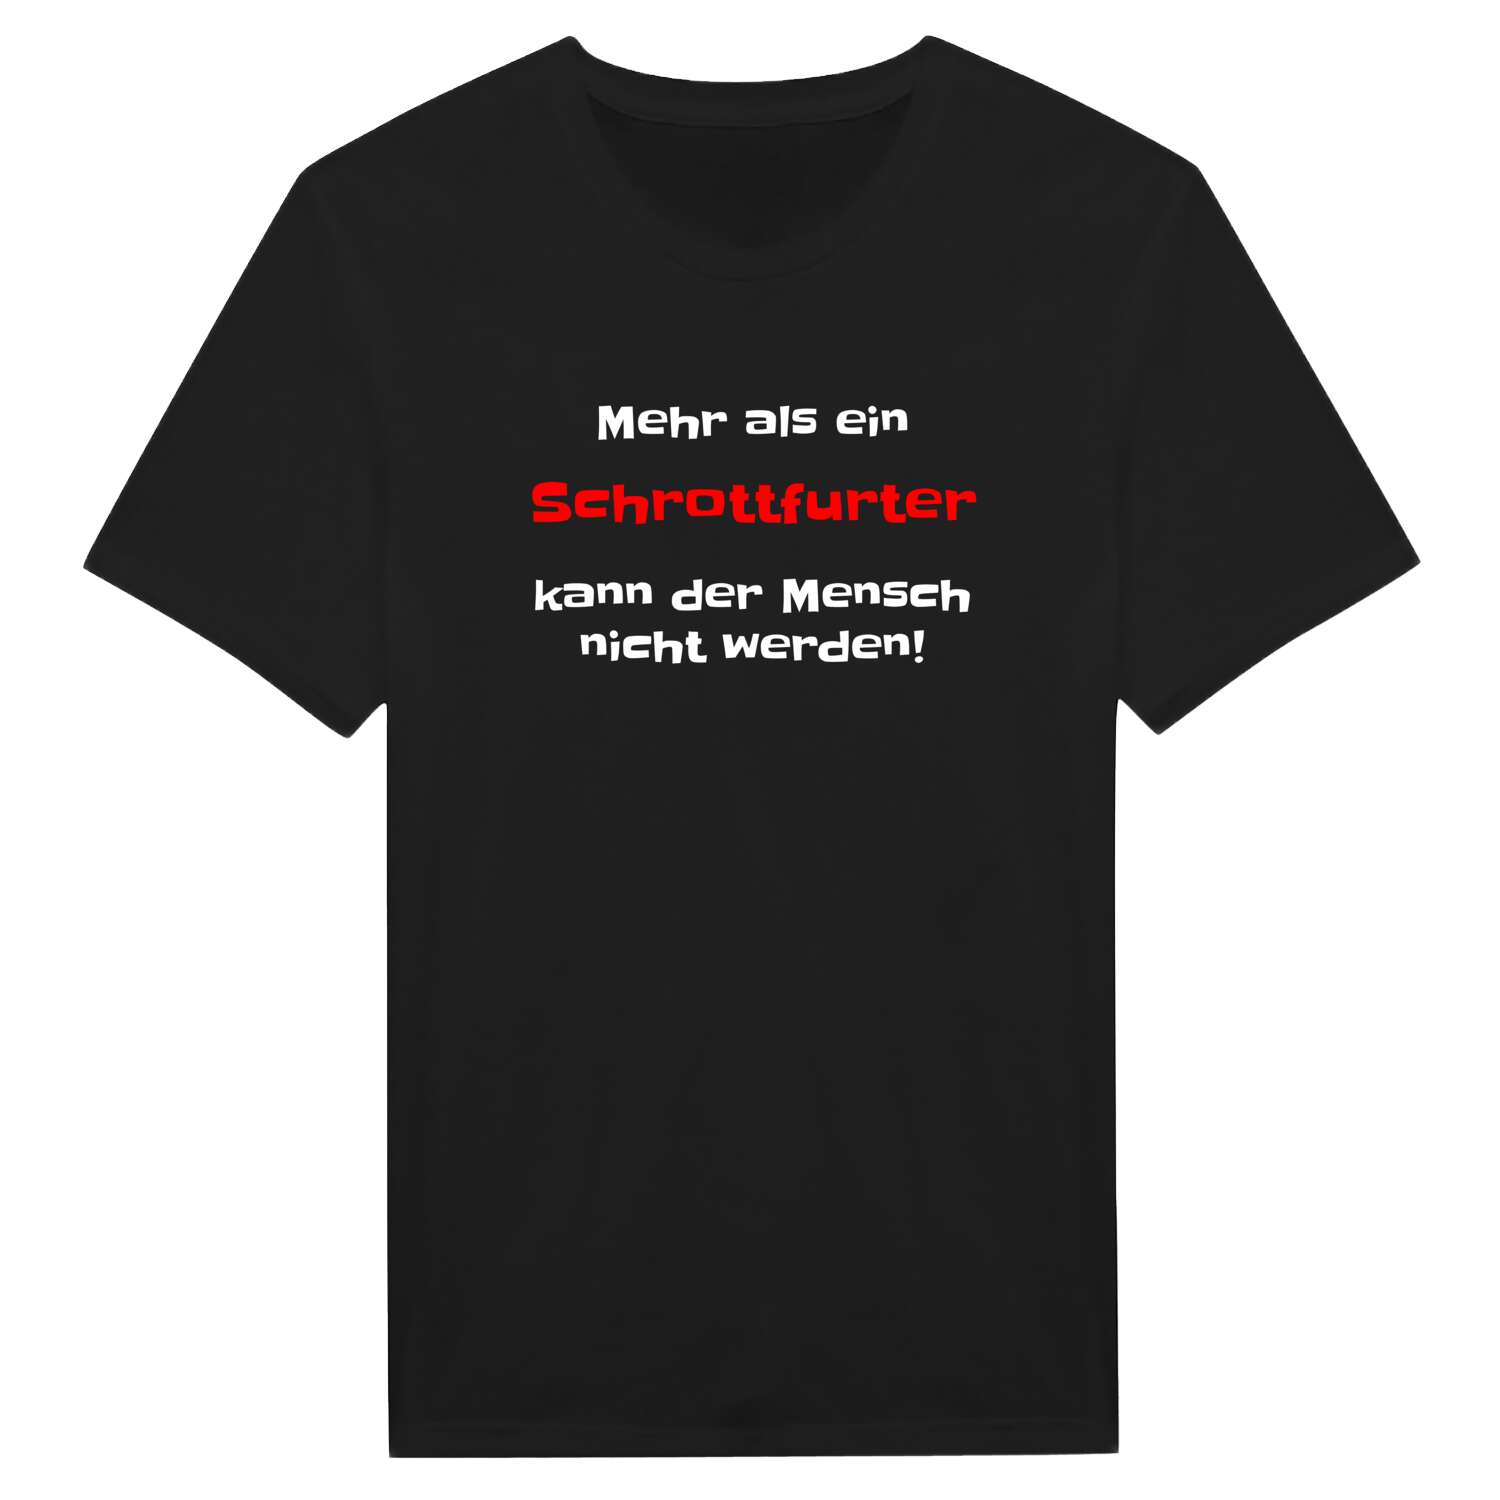 Schrottfurt T-Shirt »Mehr als ein«